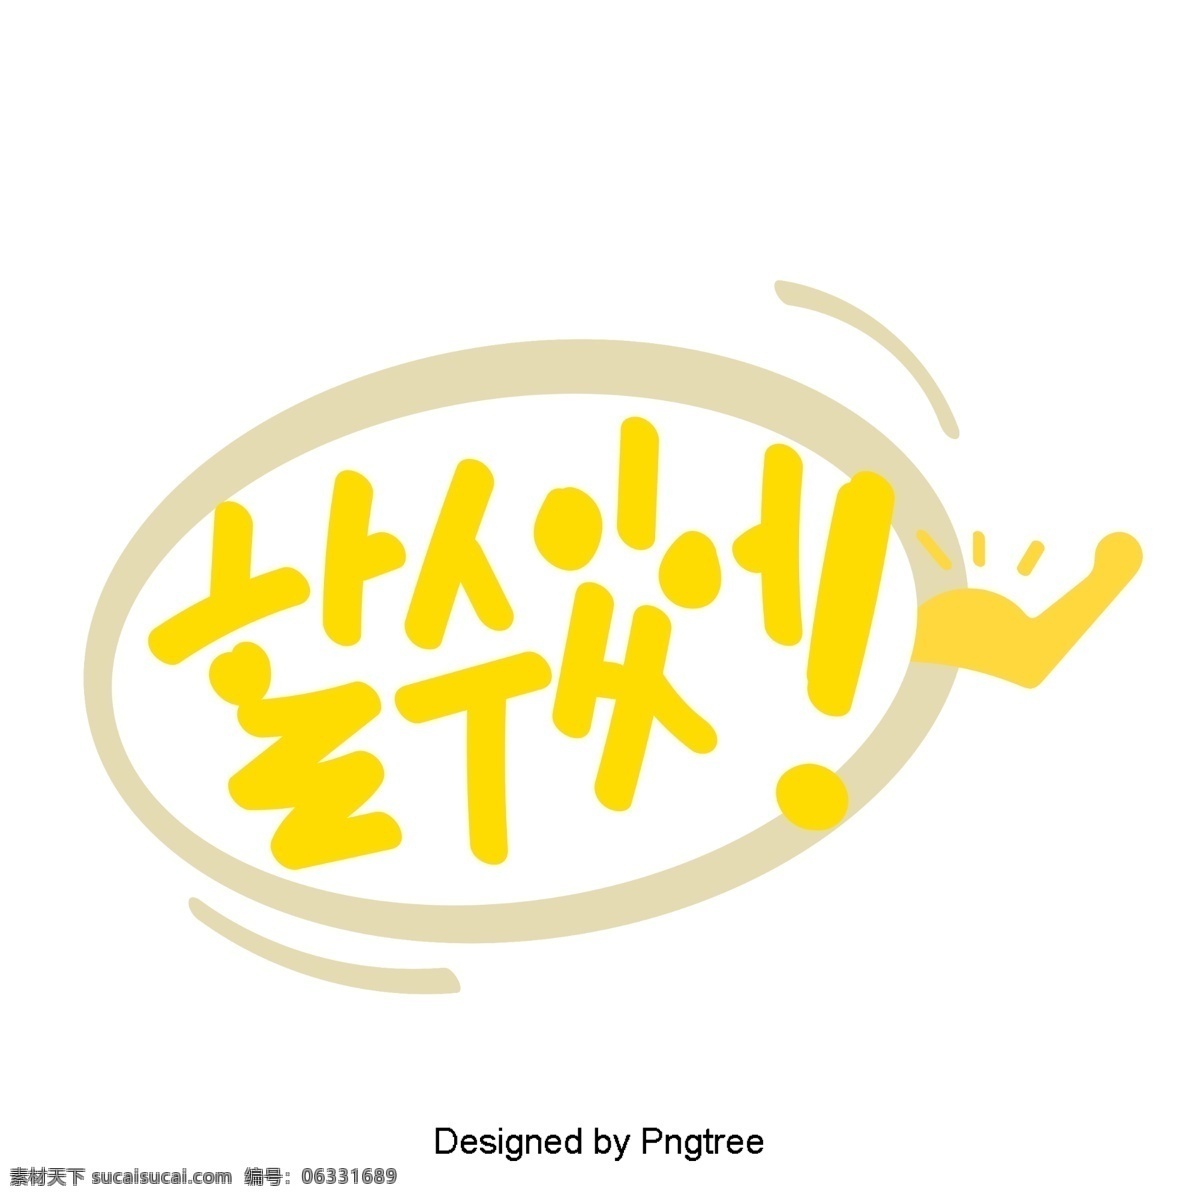 可爱 的卡 通 元素 可以 韩国 字体 风格 常用 单词 手 肌肉 黄色 对话 whisperwind 卡通 力量